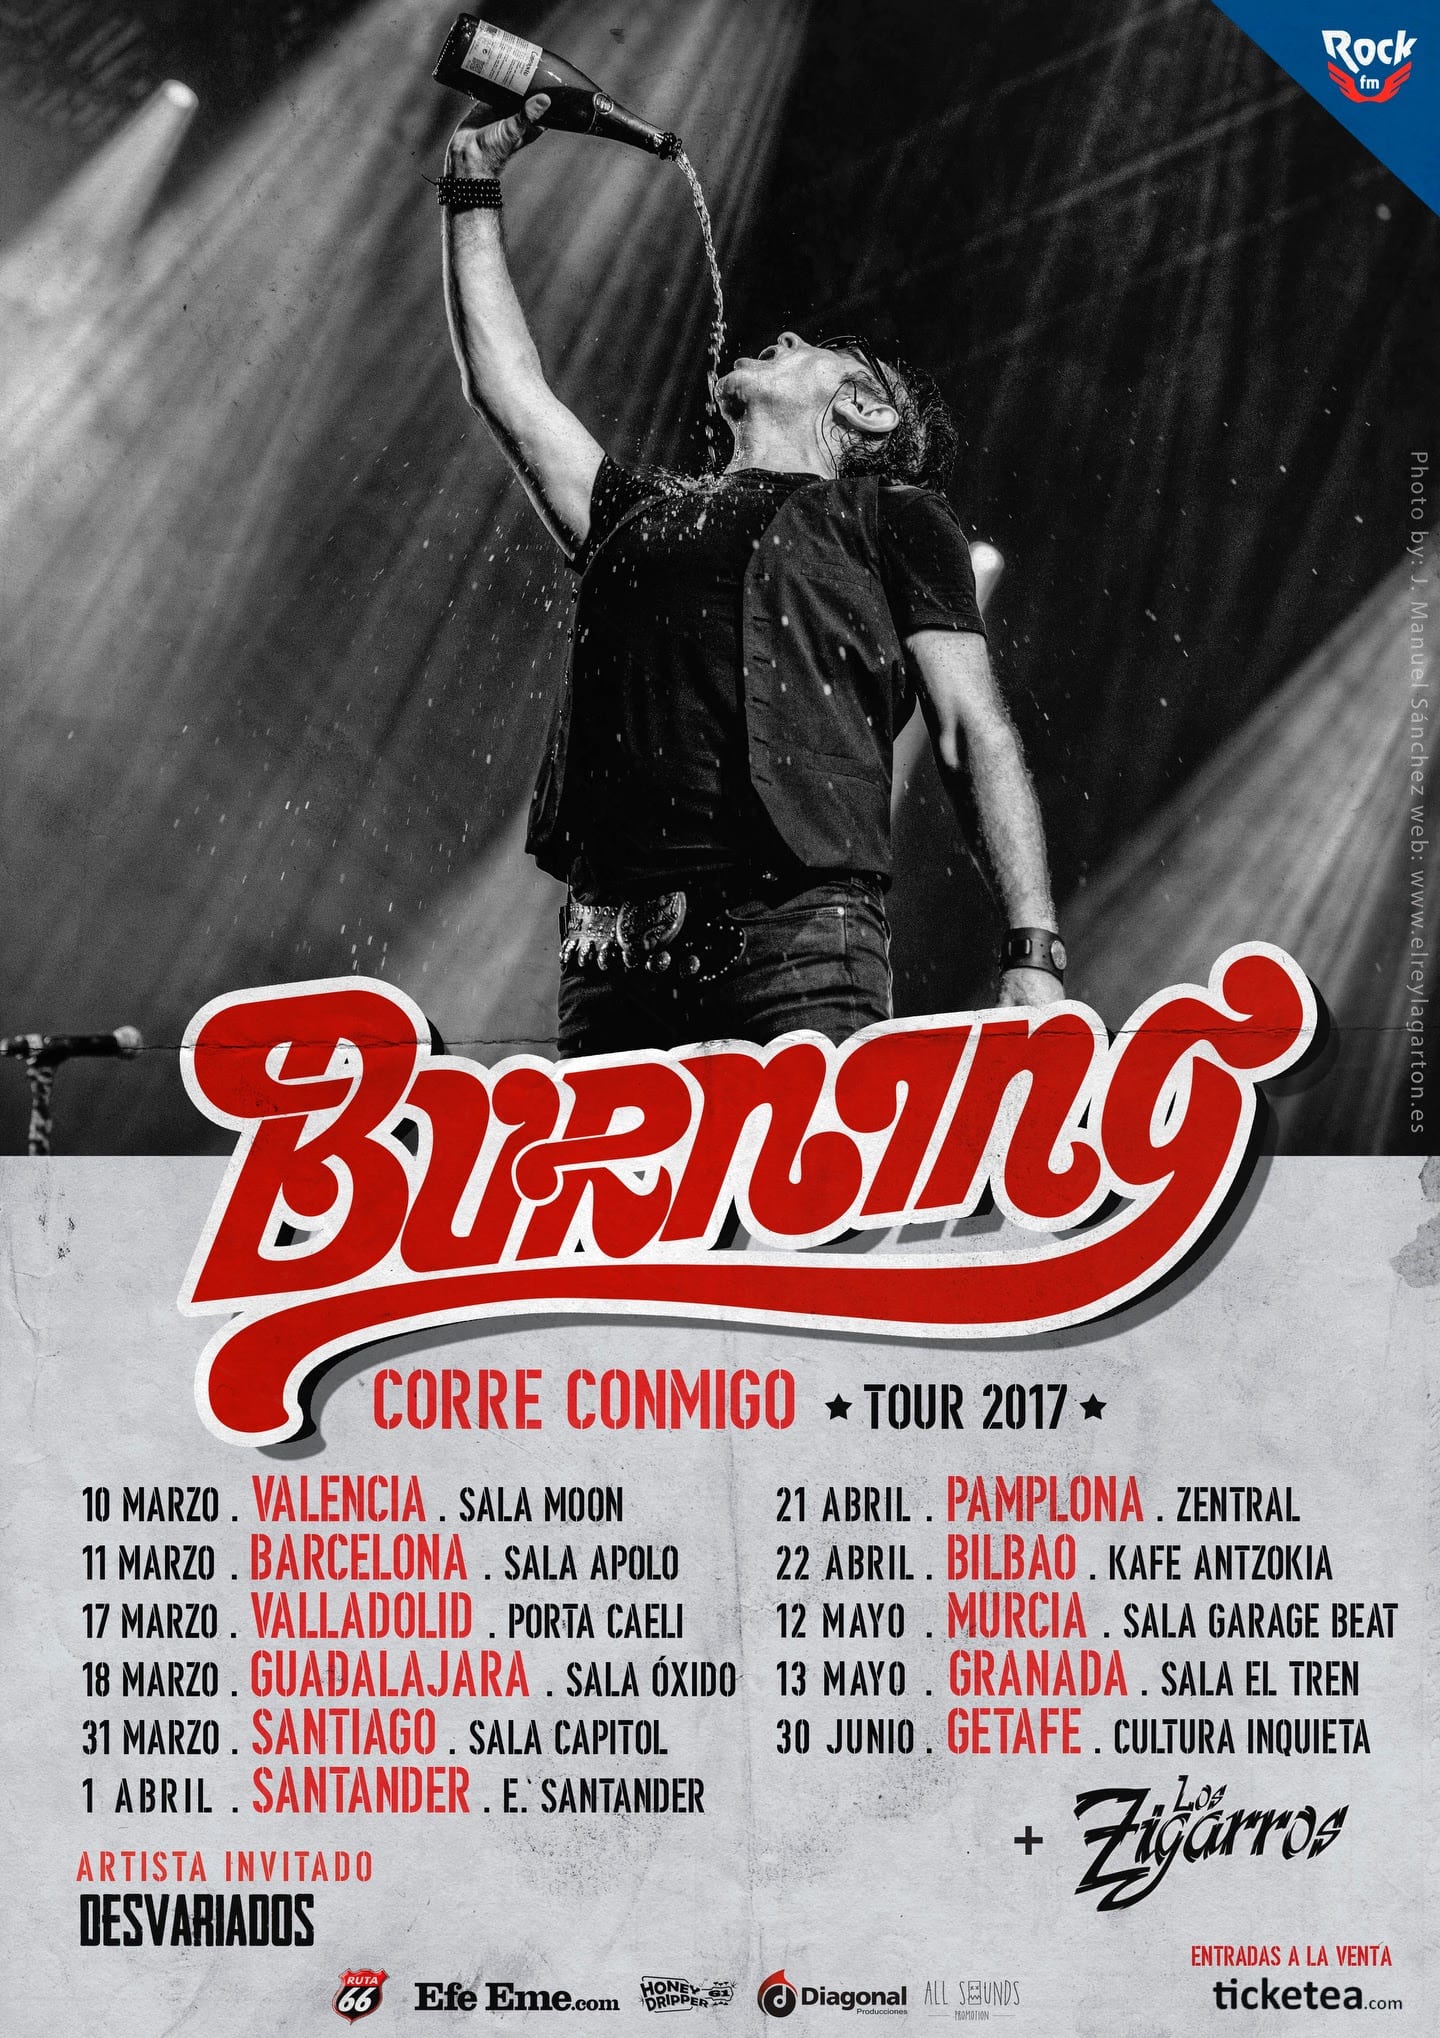 Burning anuncia las fechas de su gira “Corre conmigo” durante 2017